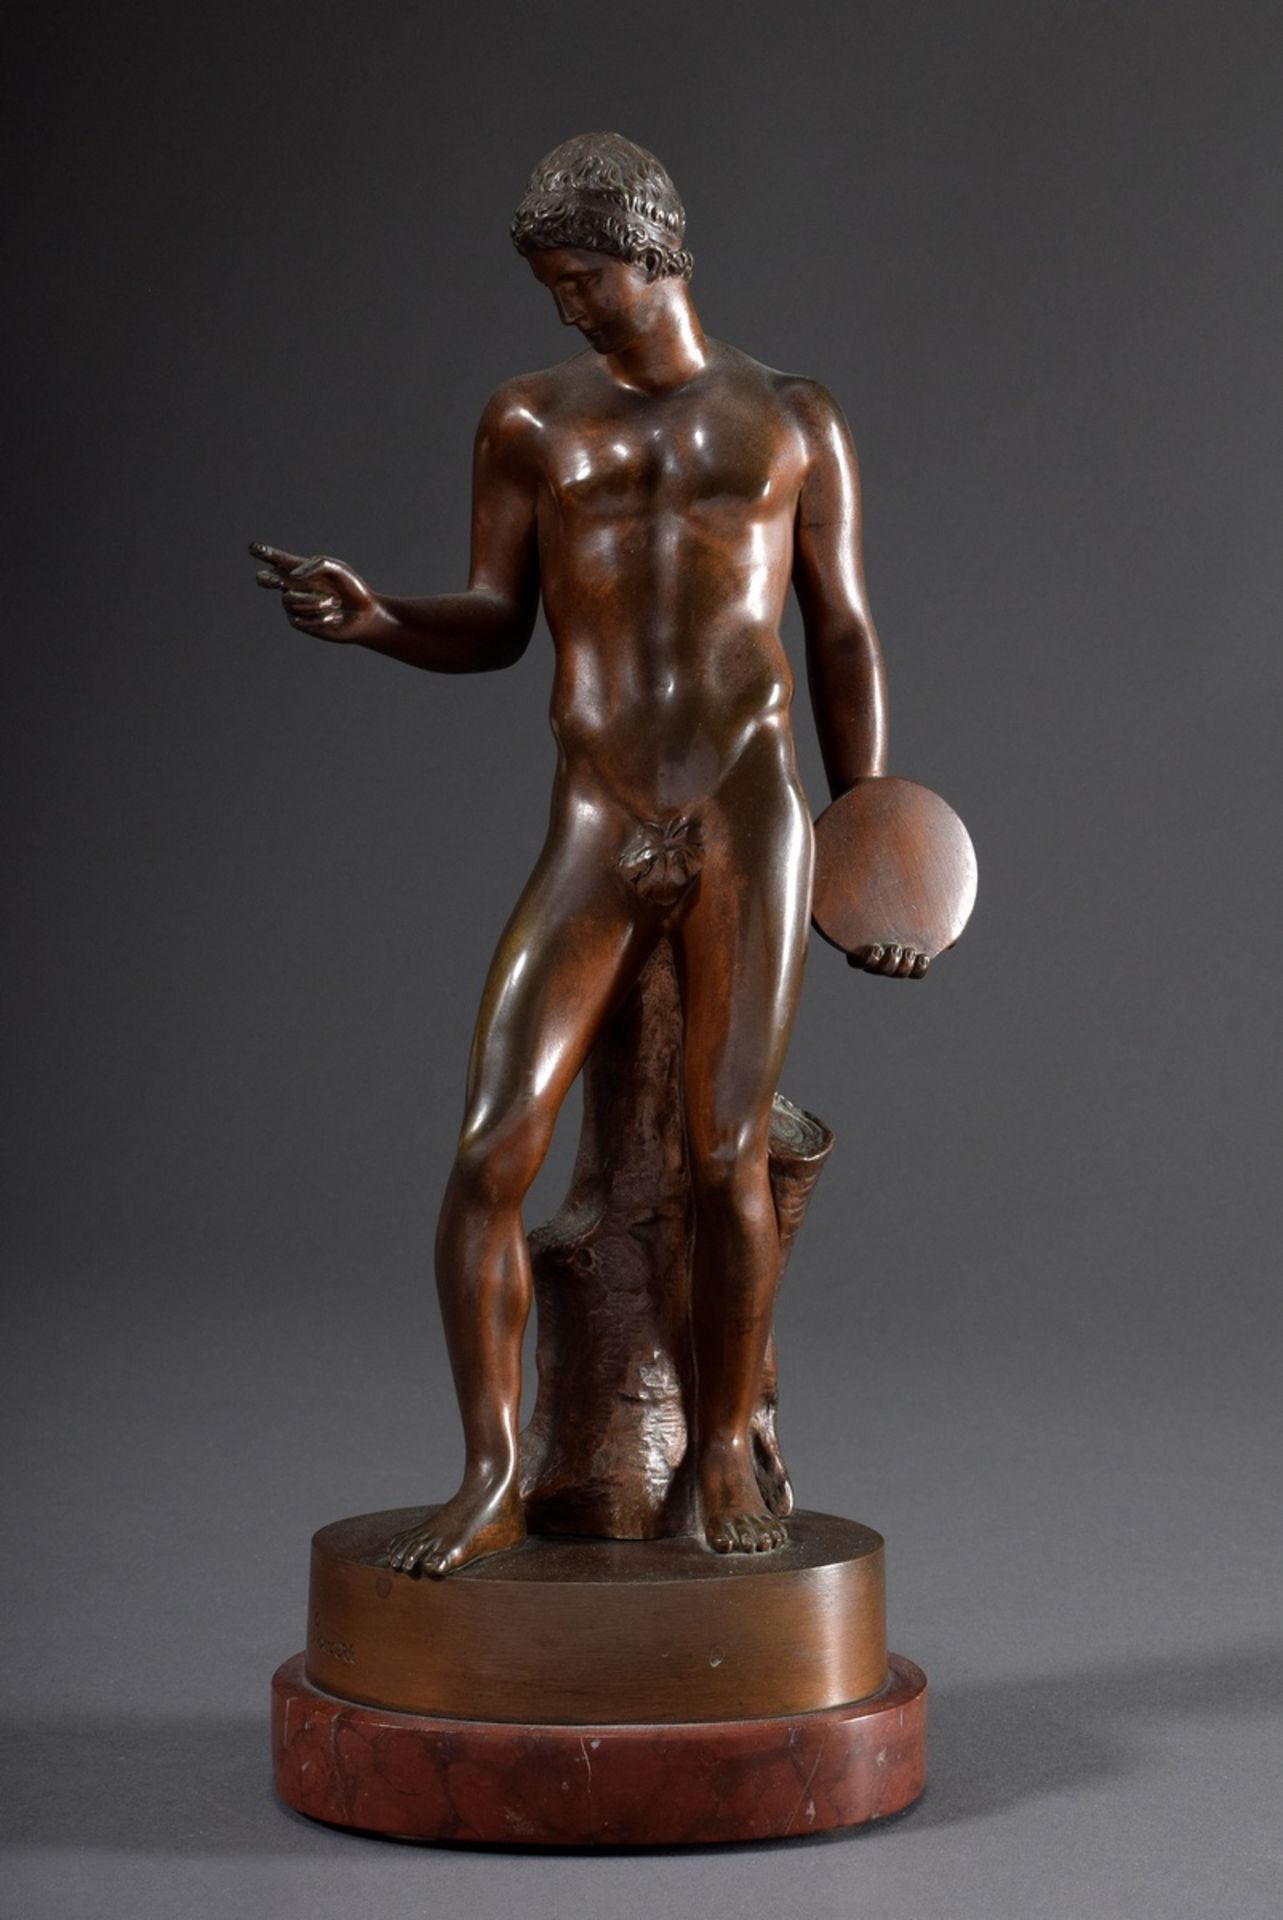 Museumsreplik "Discuswerfer" nach dem griechischen Vorbild "Discobolus" von Alcamene, Bronze patini